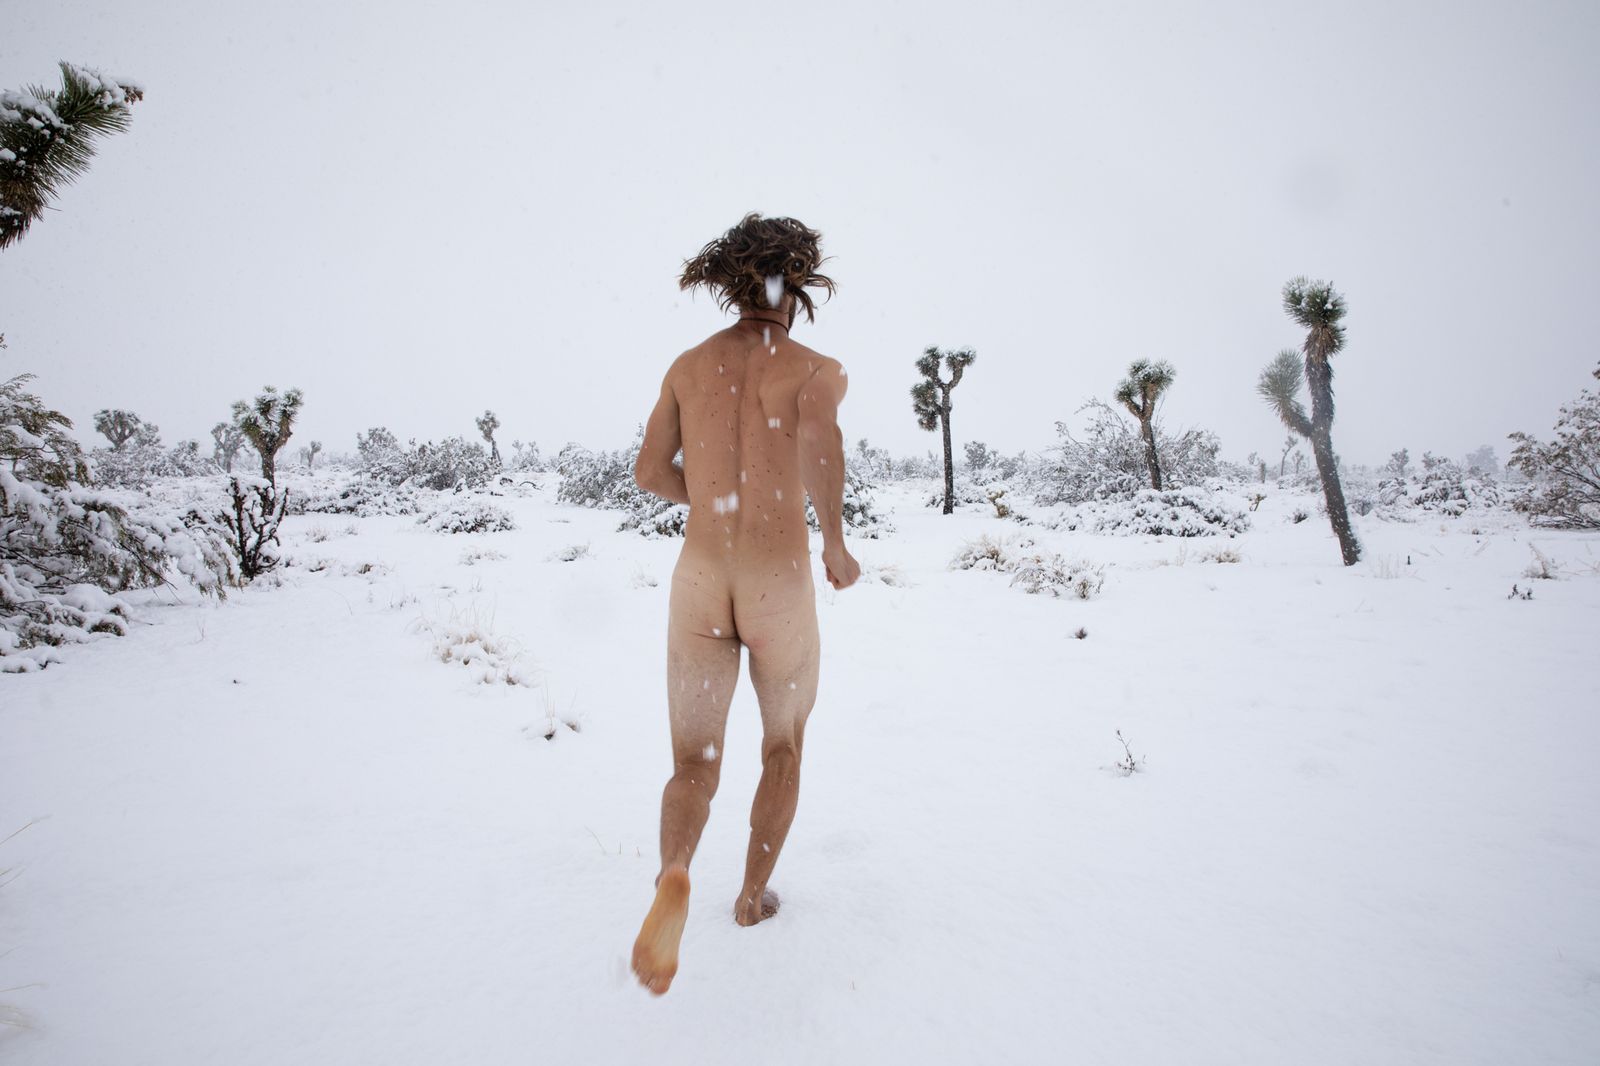 © Sofia Aldinio - Running in the snow, Colin Boyd.